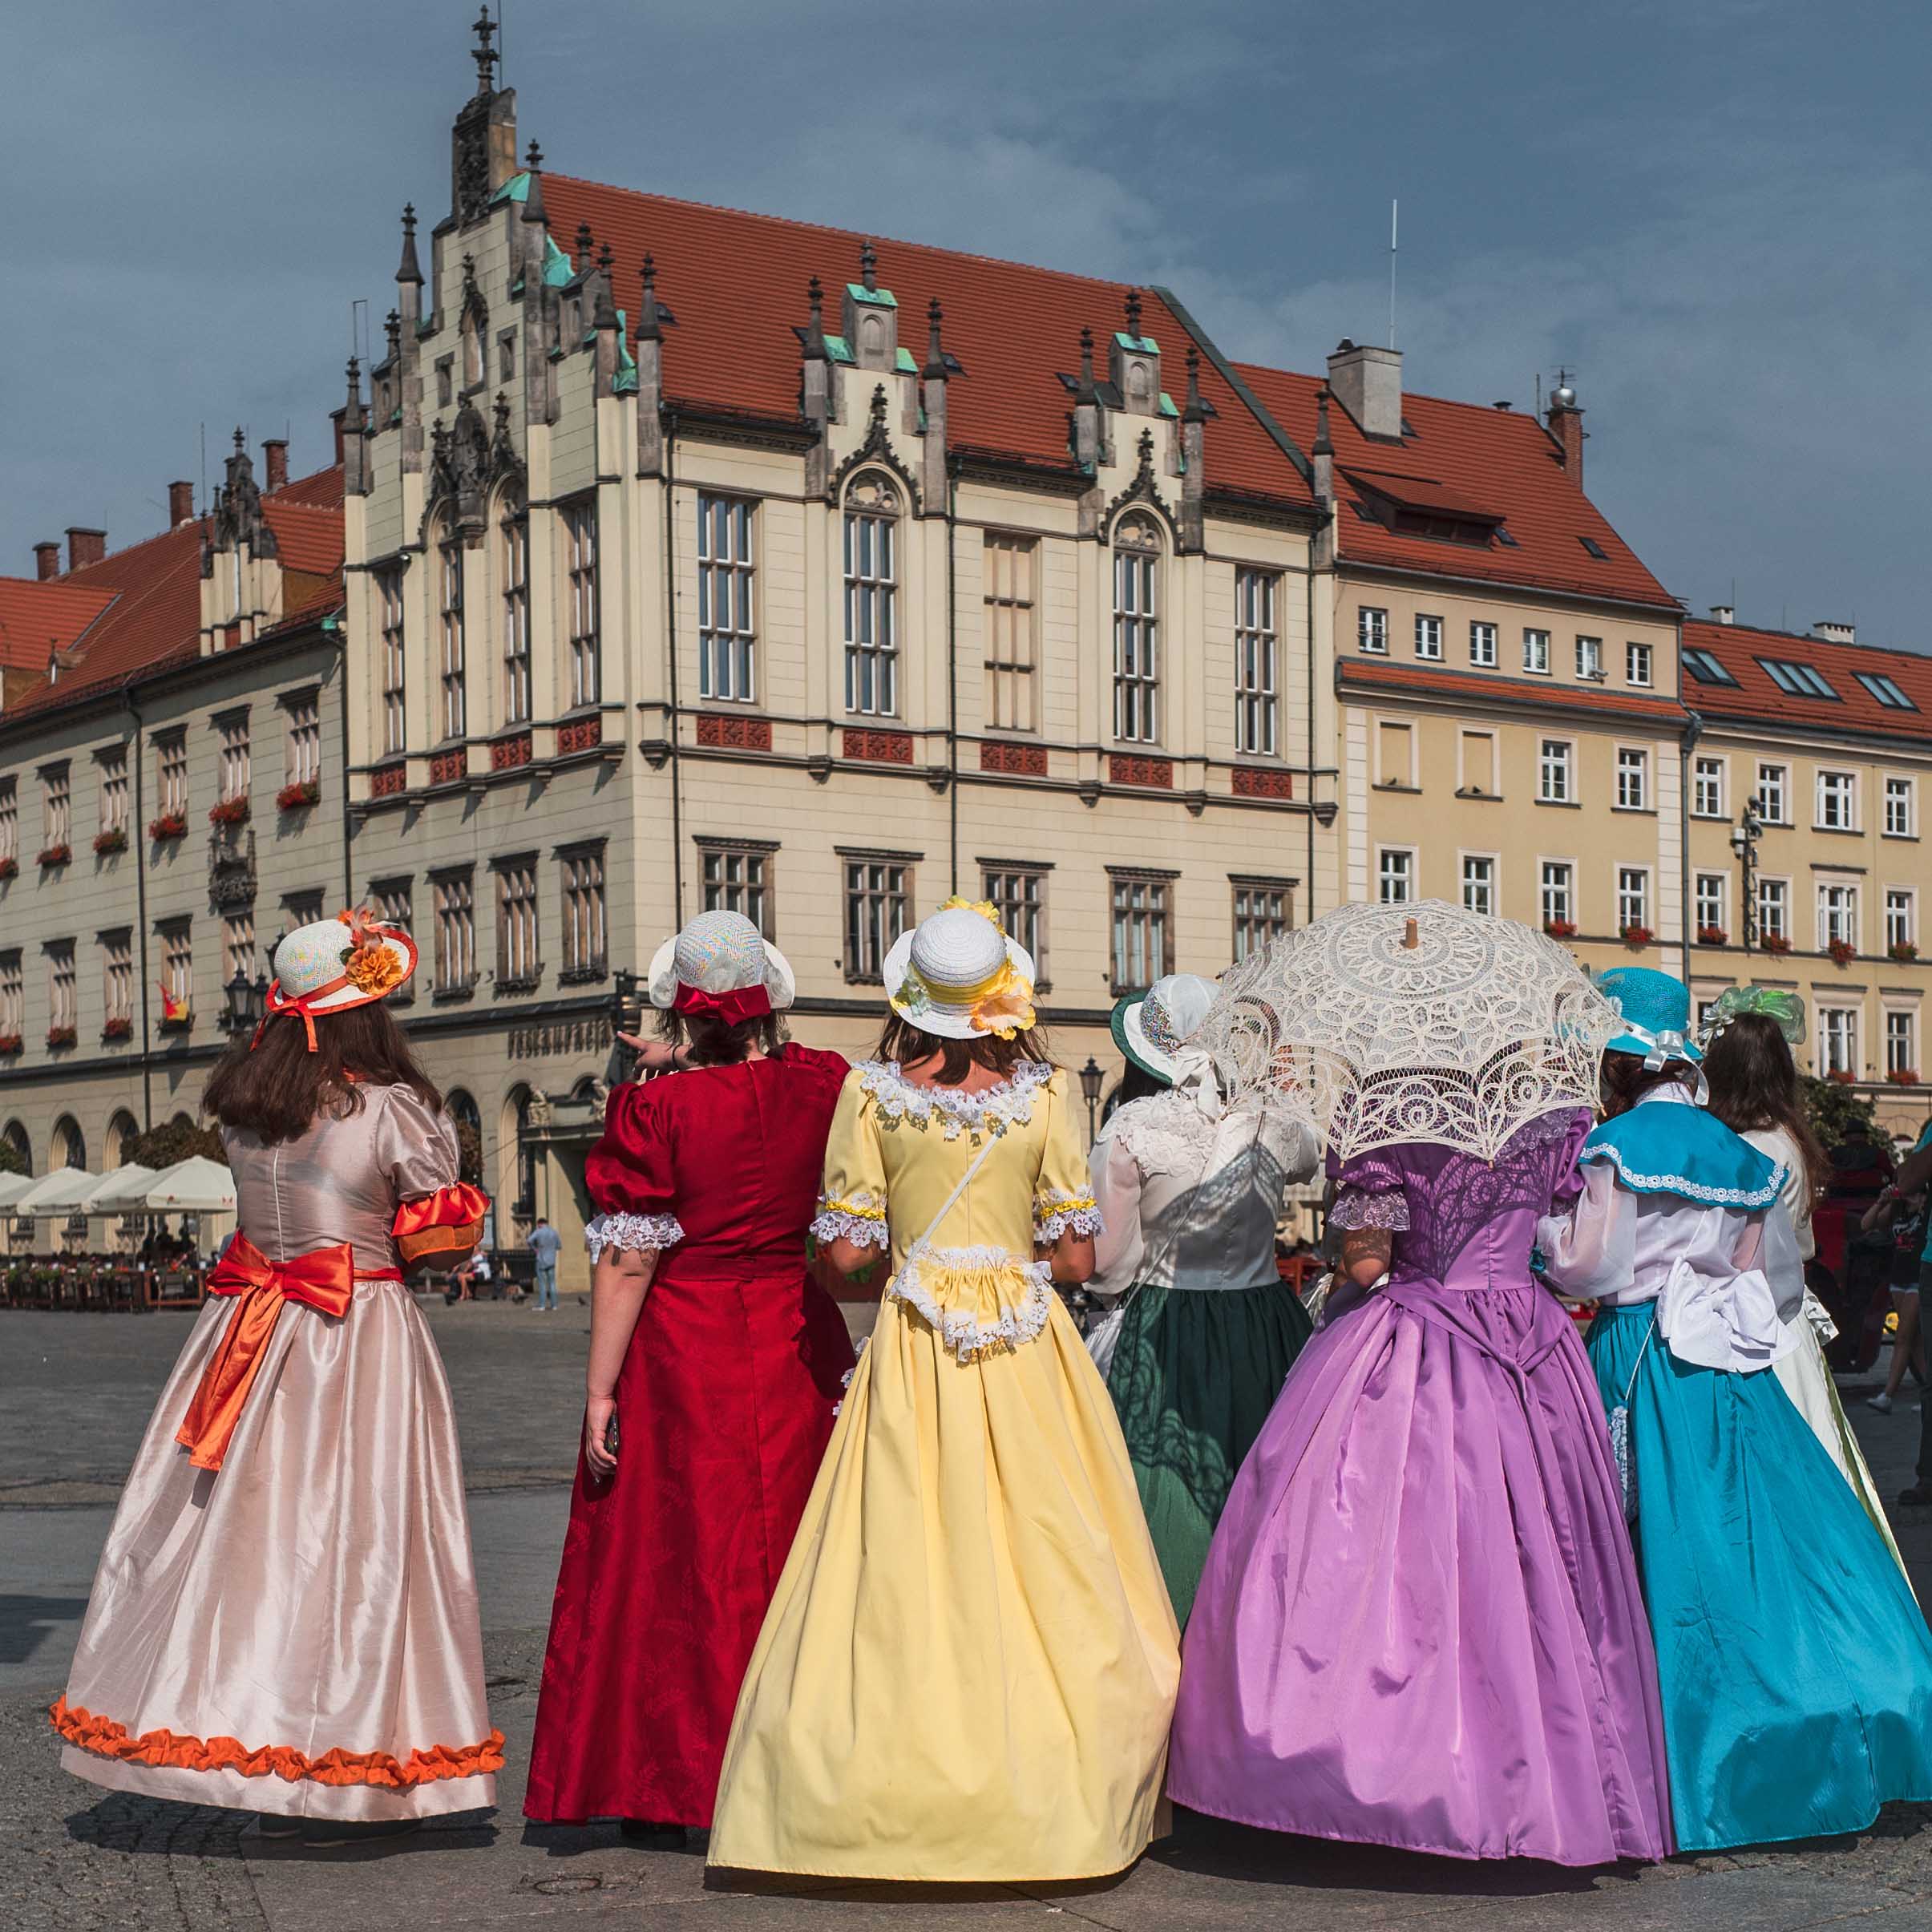 sechs Frauen mit tollem mittelalterlichen Kleid sind von hinten zu sehen und schauen in Richtung eines städtischen Gebäudes